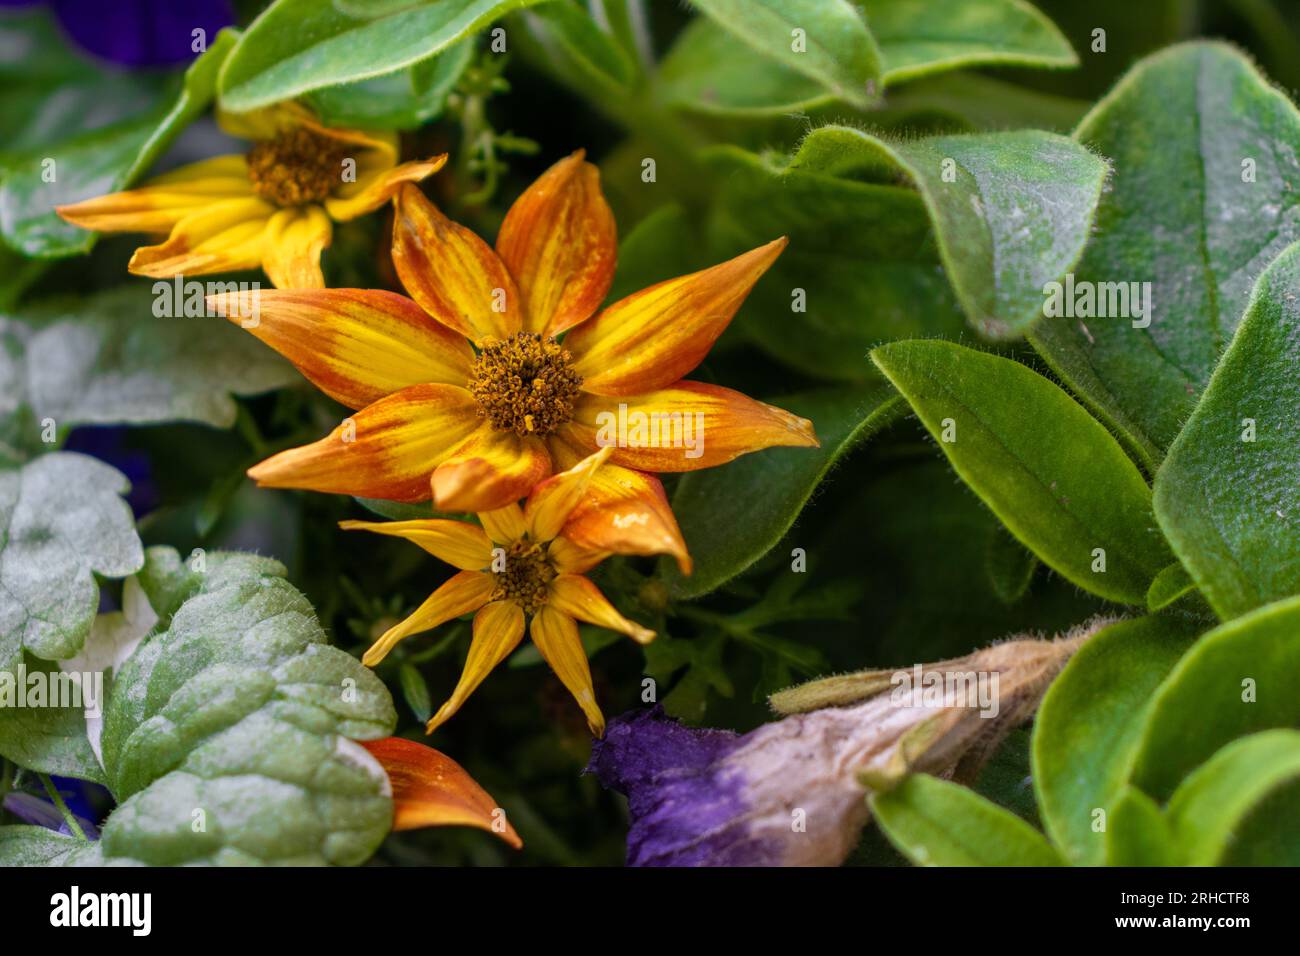 Fiore giallo con punte arancioni e centro marrone - primo piano - foglie verdi e fiori viola e blu sullo sfondo - effetto sfocato - sopra l'angolo Foto Stock